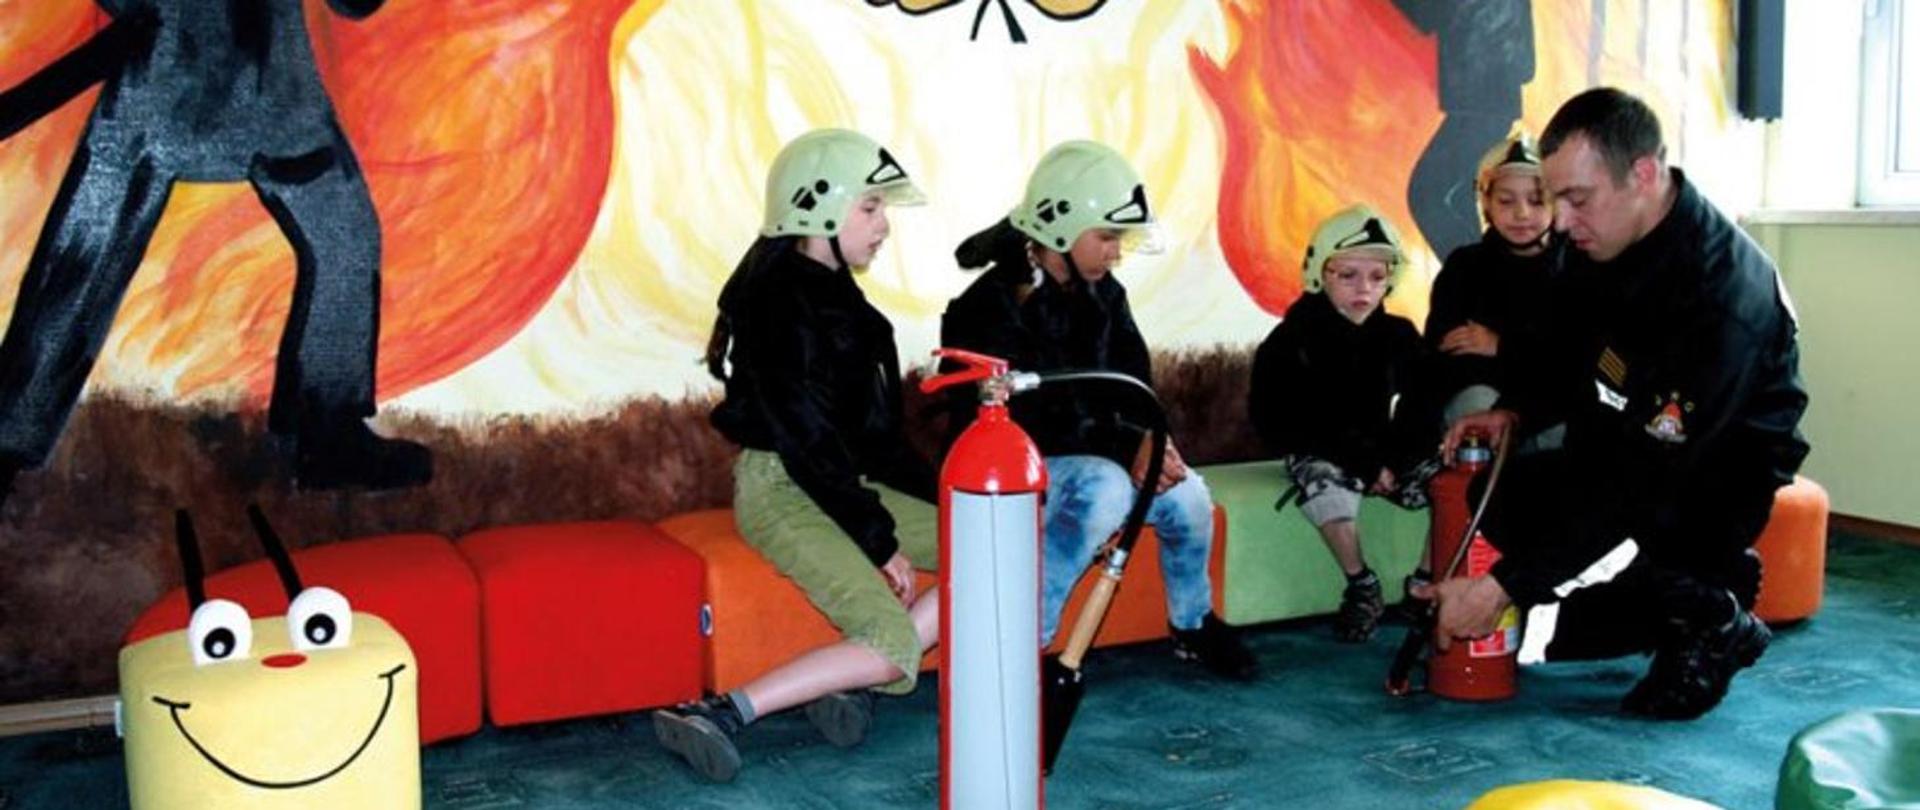 Zdjęcie przedstawia strażaka w ubraniu koszarowym demonstrującego czwórce dzieci zasadę działania gaśnicy. Dzieci mają na głowie plastikowe hełmy i siedzą na kanapie która przypomina stonogę. Na ścianie za nimi widać grafikę przedstawiającą strażaka gaszącego pożar